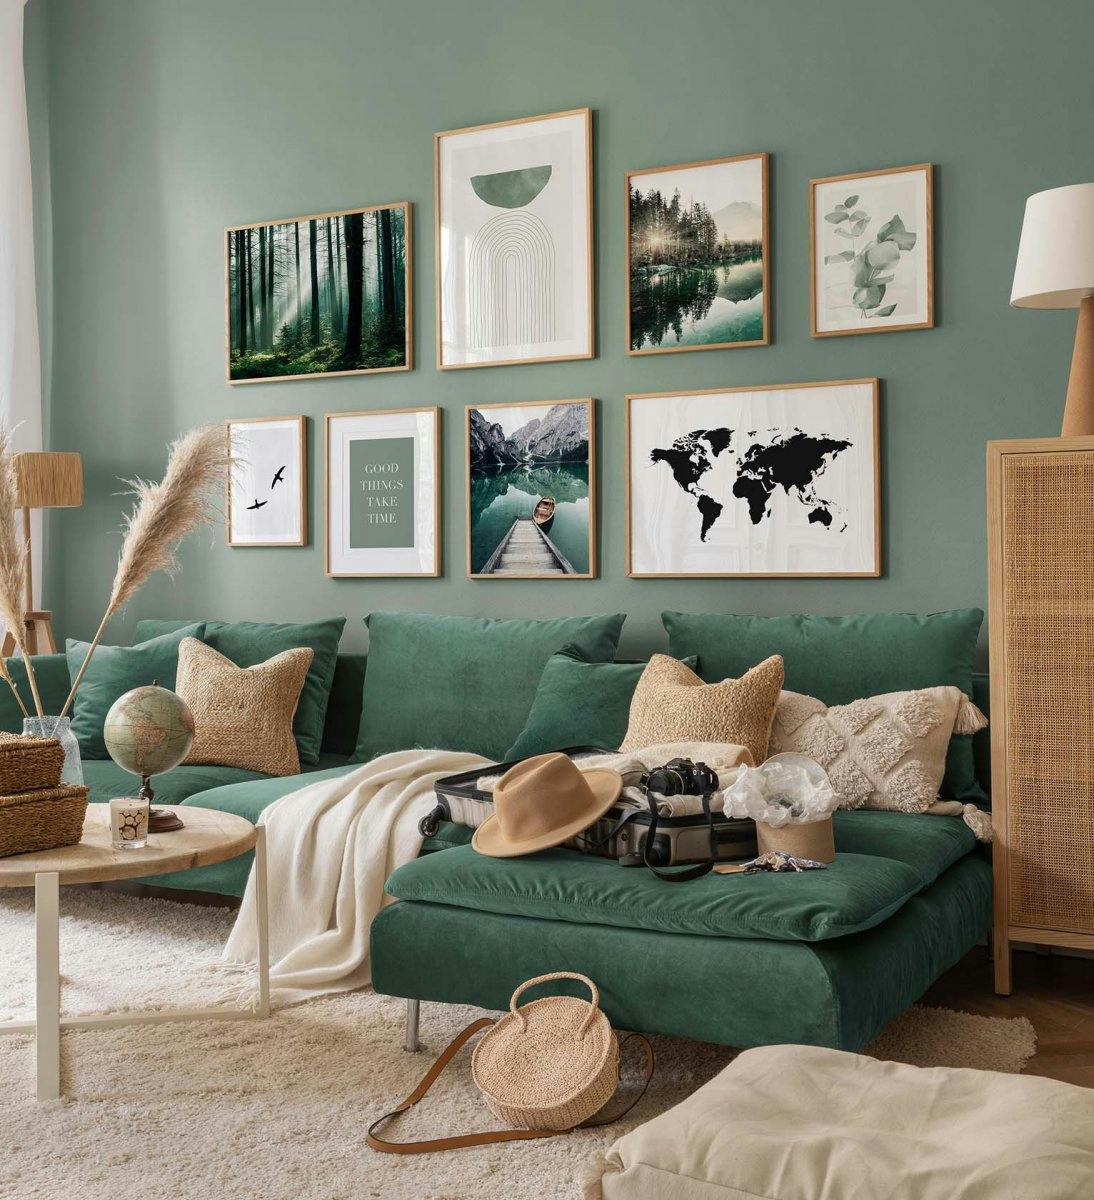 Décoration murale verte et cosy avec des posters de nature et des cadres en chêne pour le salon